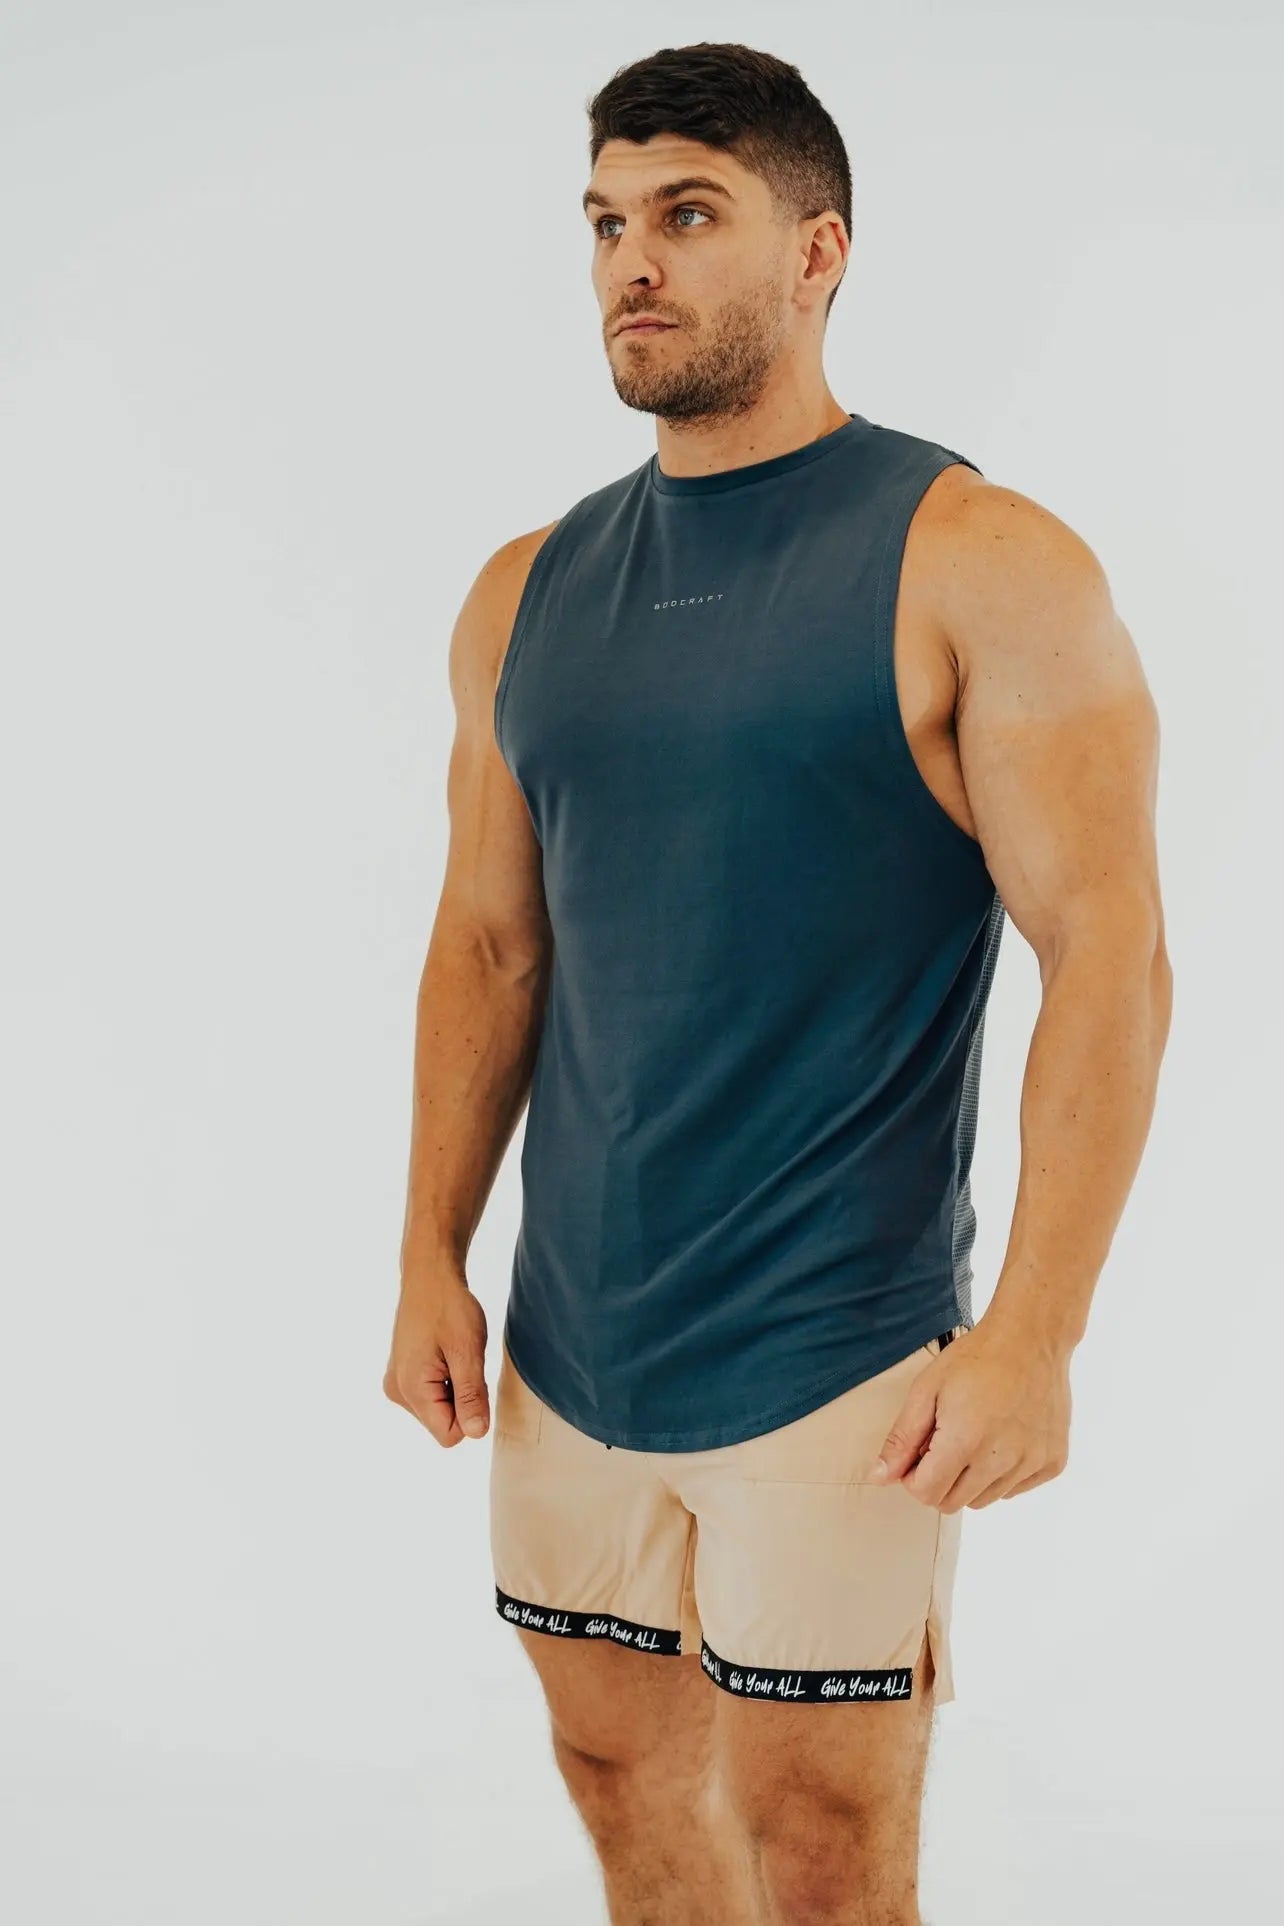 Workout Gear For Men - Sleeveless